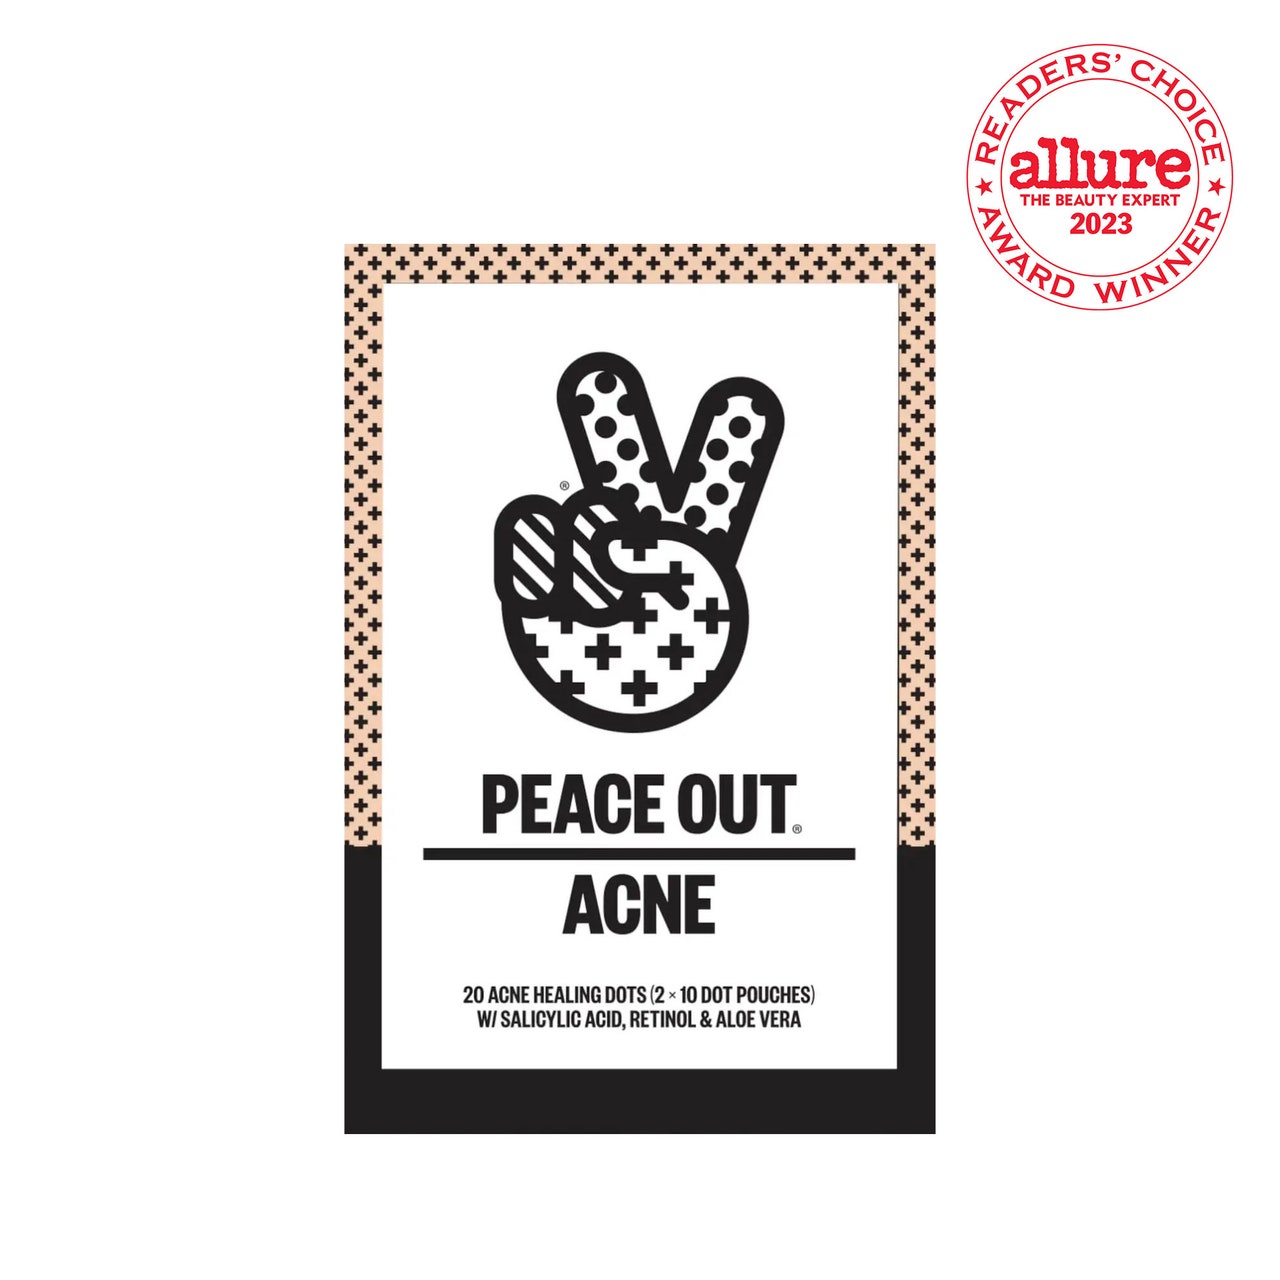 Peace Out Acne Healing Dots-Box mit Peace-Zeichen-Illustration darauf auf weißem Hintergrund mit weißem und rotem RCA-Siegel in der oberen rechten Ecke